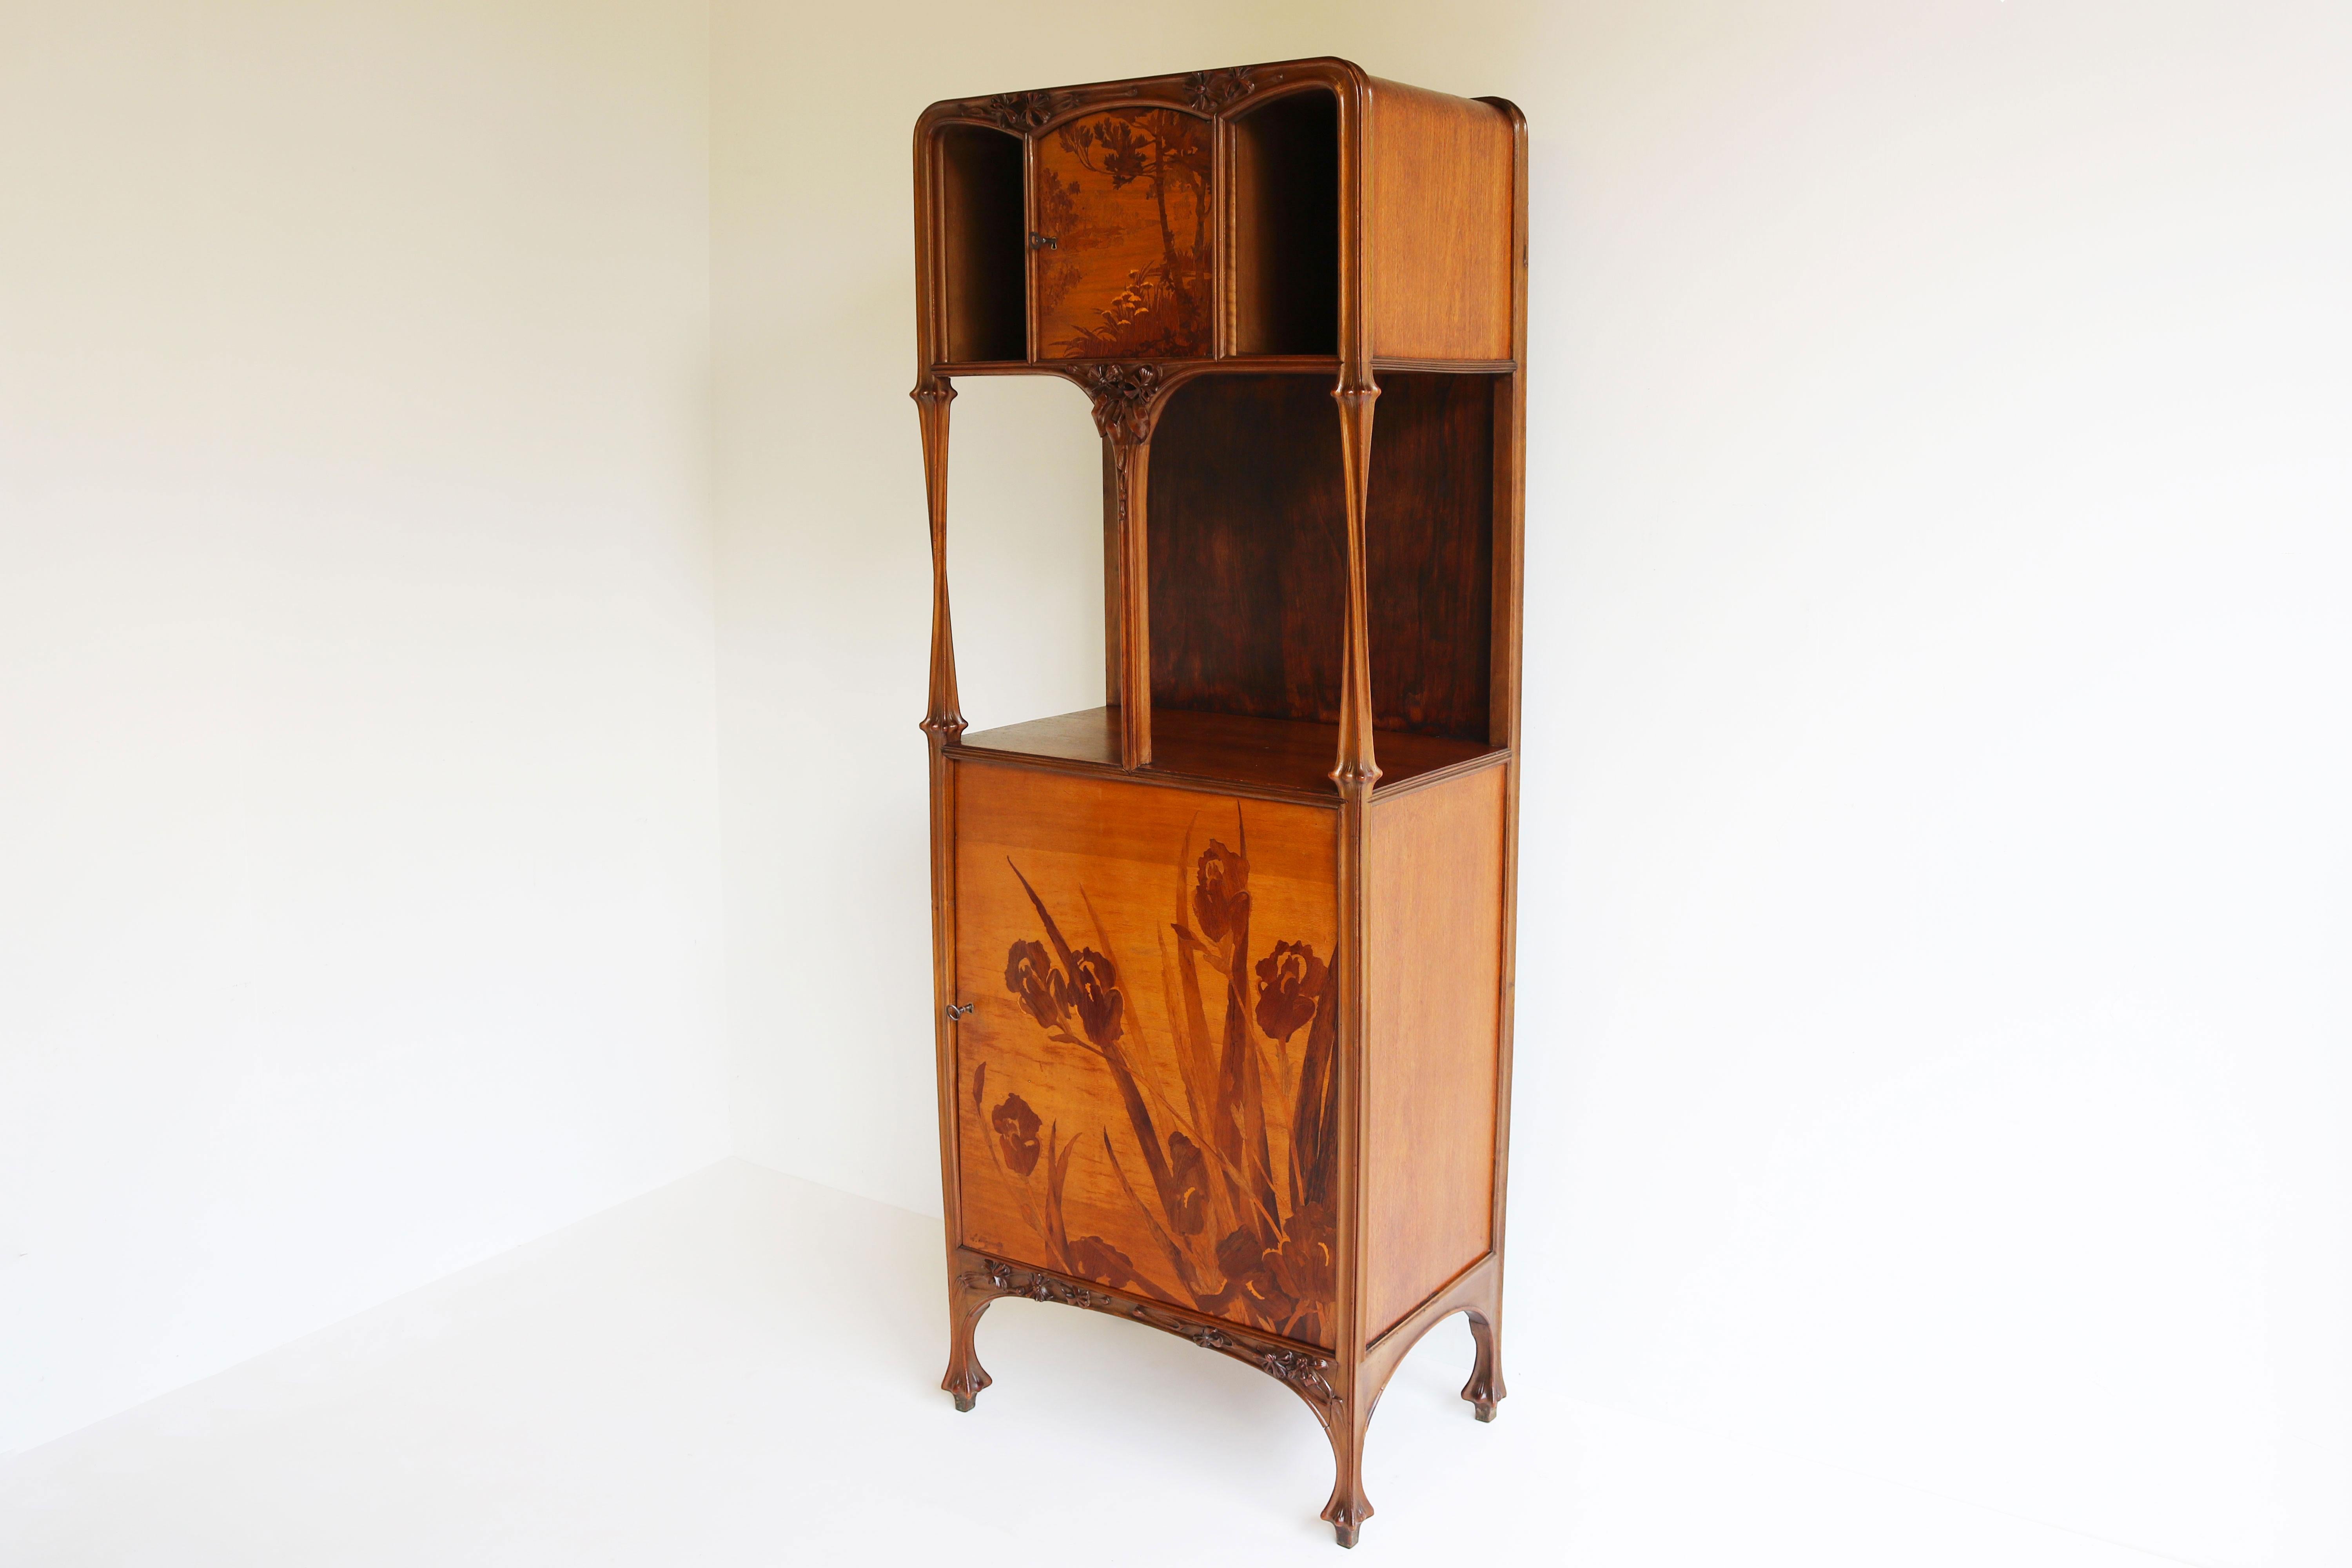 Exceptional Art Nouveau Cabinet by Louis Majorelle 1900 French Antique Nancy For Sale 2